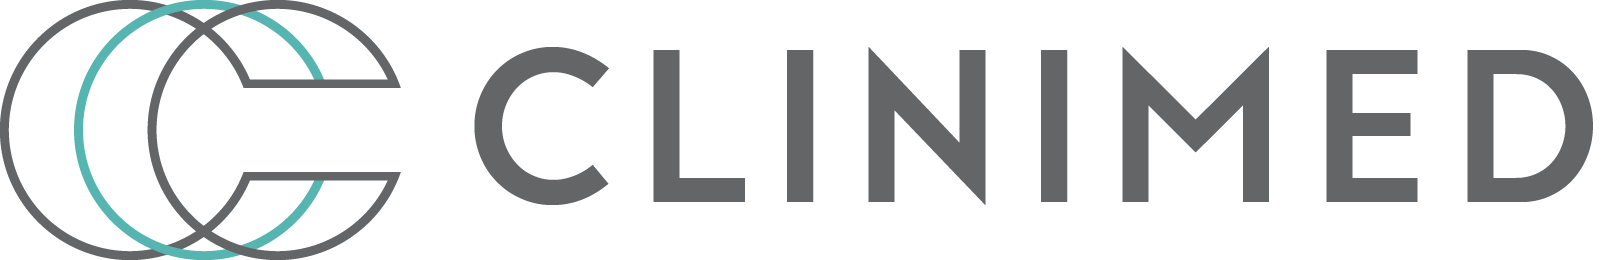 Clinimed logo